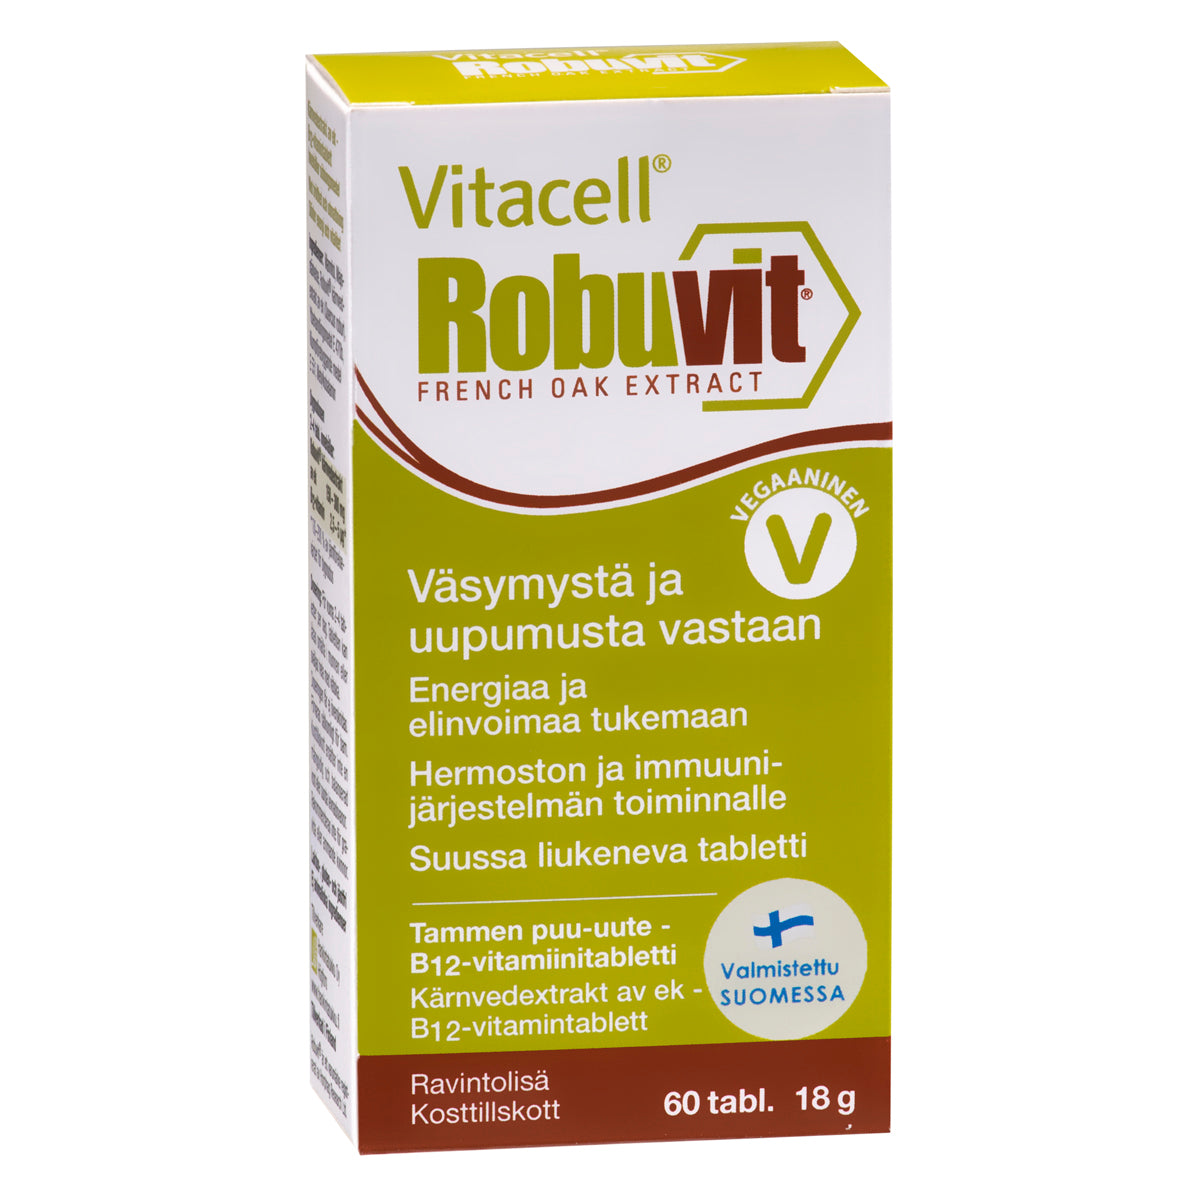 Vitacell Robuvit 60 tabl. Sisältää patentoitua Robuvit tammen puu-uutetta sekä B12-vitamiinia hyvin imeytyvänä metyylikobalamiinina. Energiaa ja elinvoimaa tukemaan. Suosittu Vitacell Robuvit tukee myös mitokondrioiden toimintaa. 